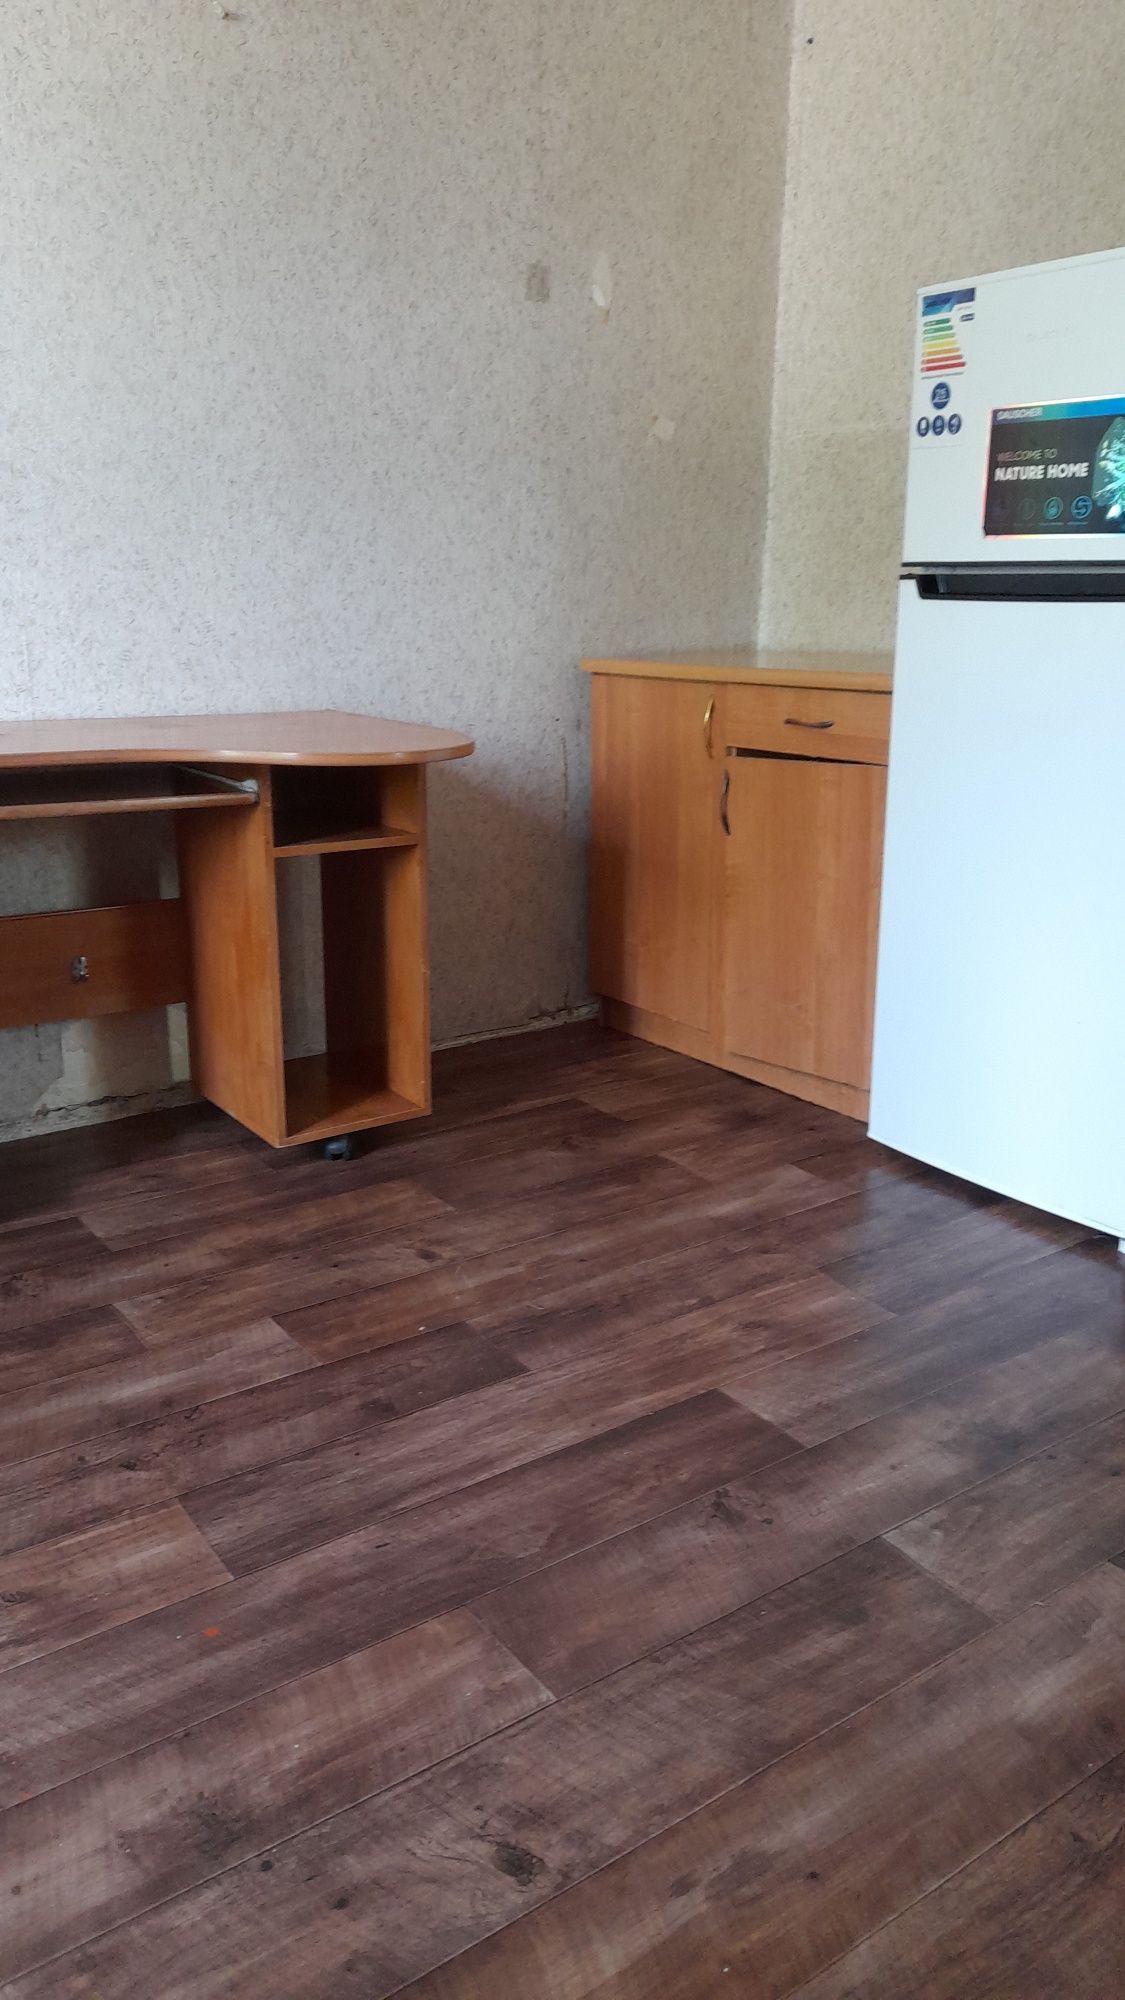 Продам в Алматы 2 комнатную приватизирована обшежитие,читать вниматель